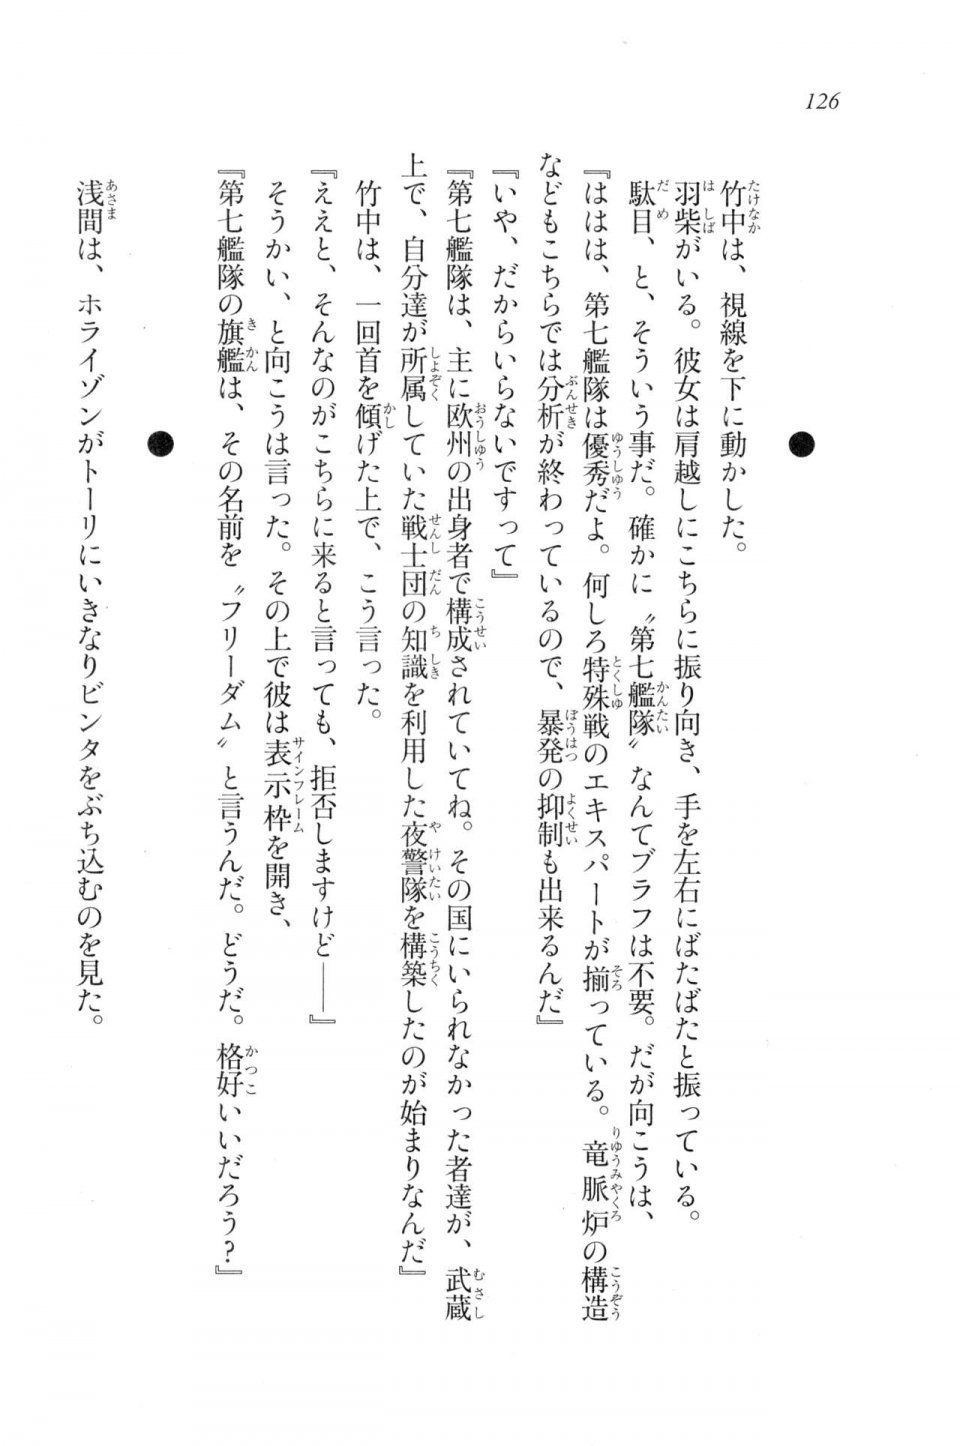 Kyoukai Senjou no Horizon LN Vol 20(8B) - Photo #126